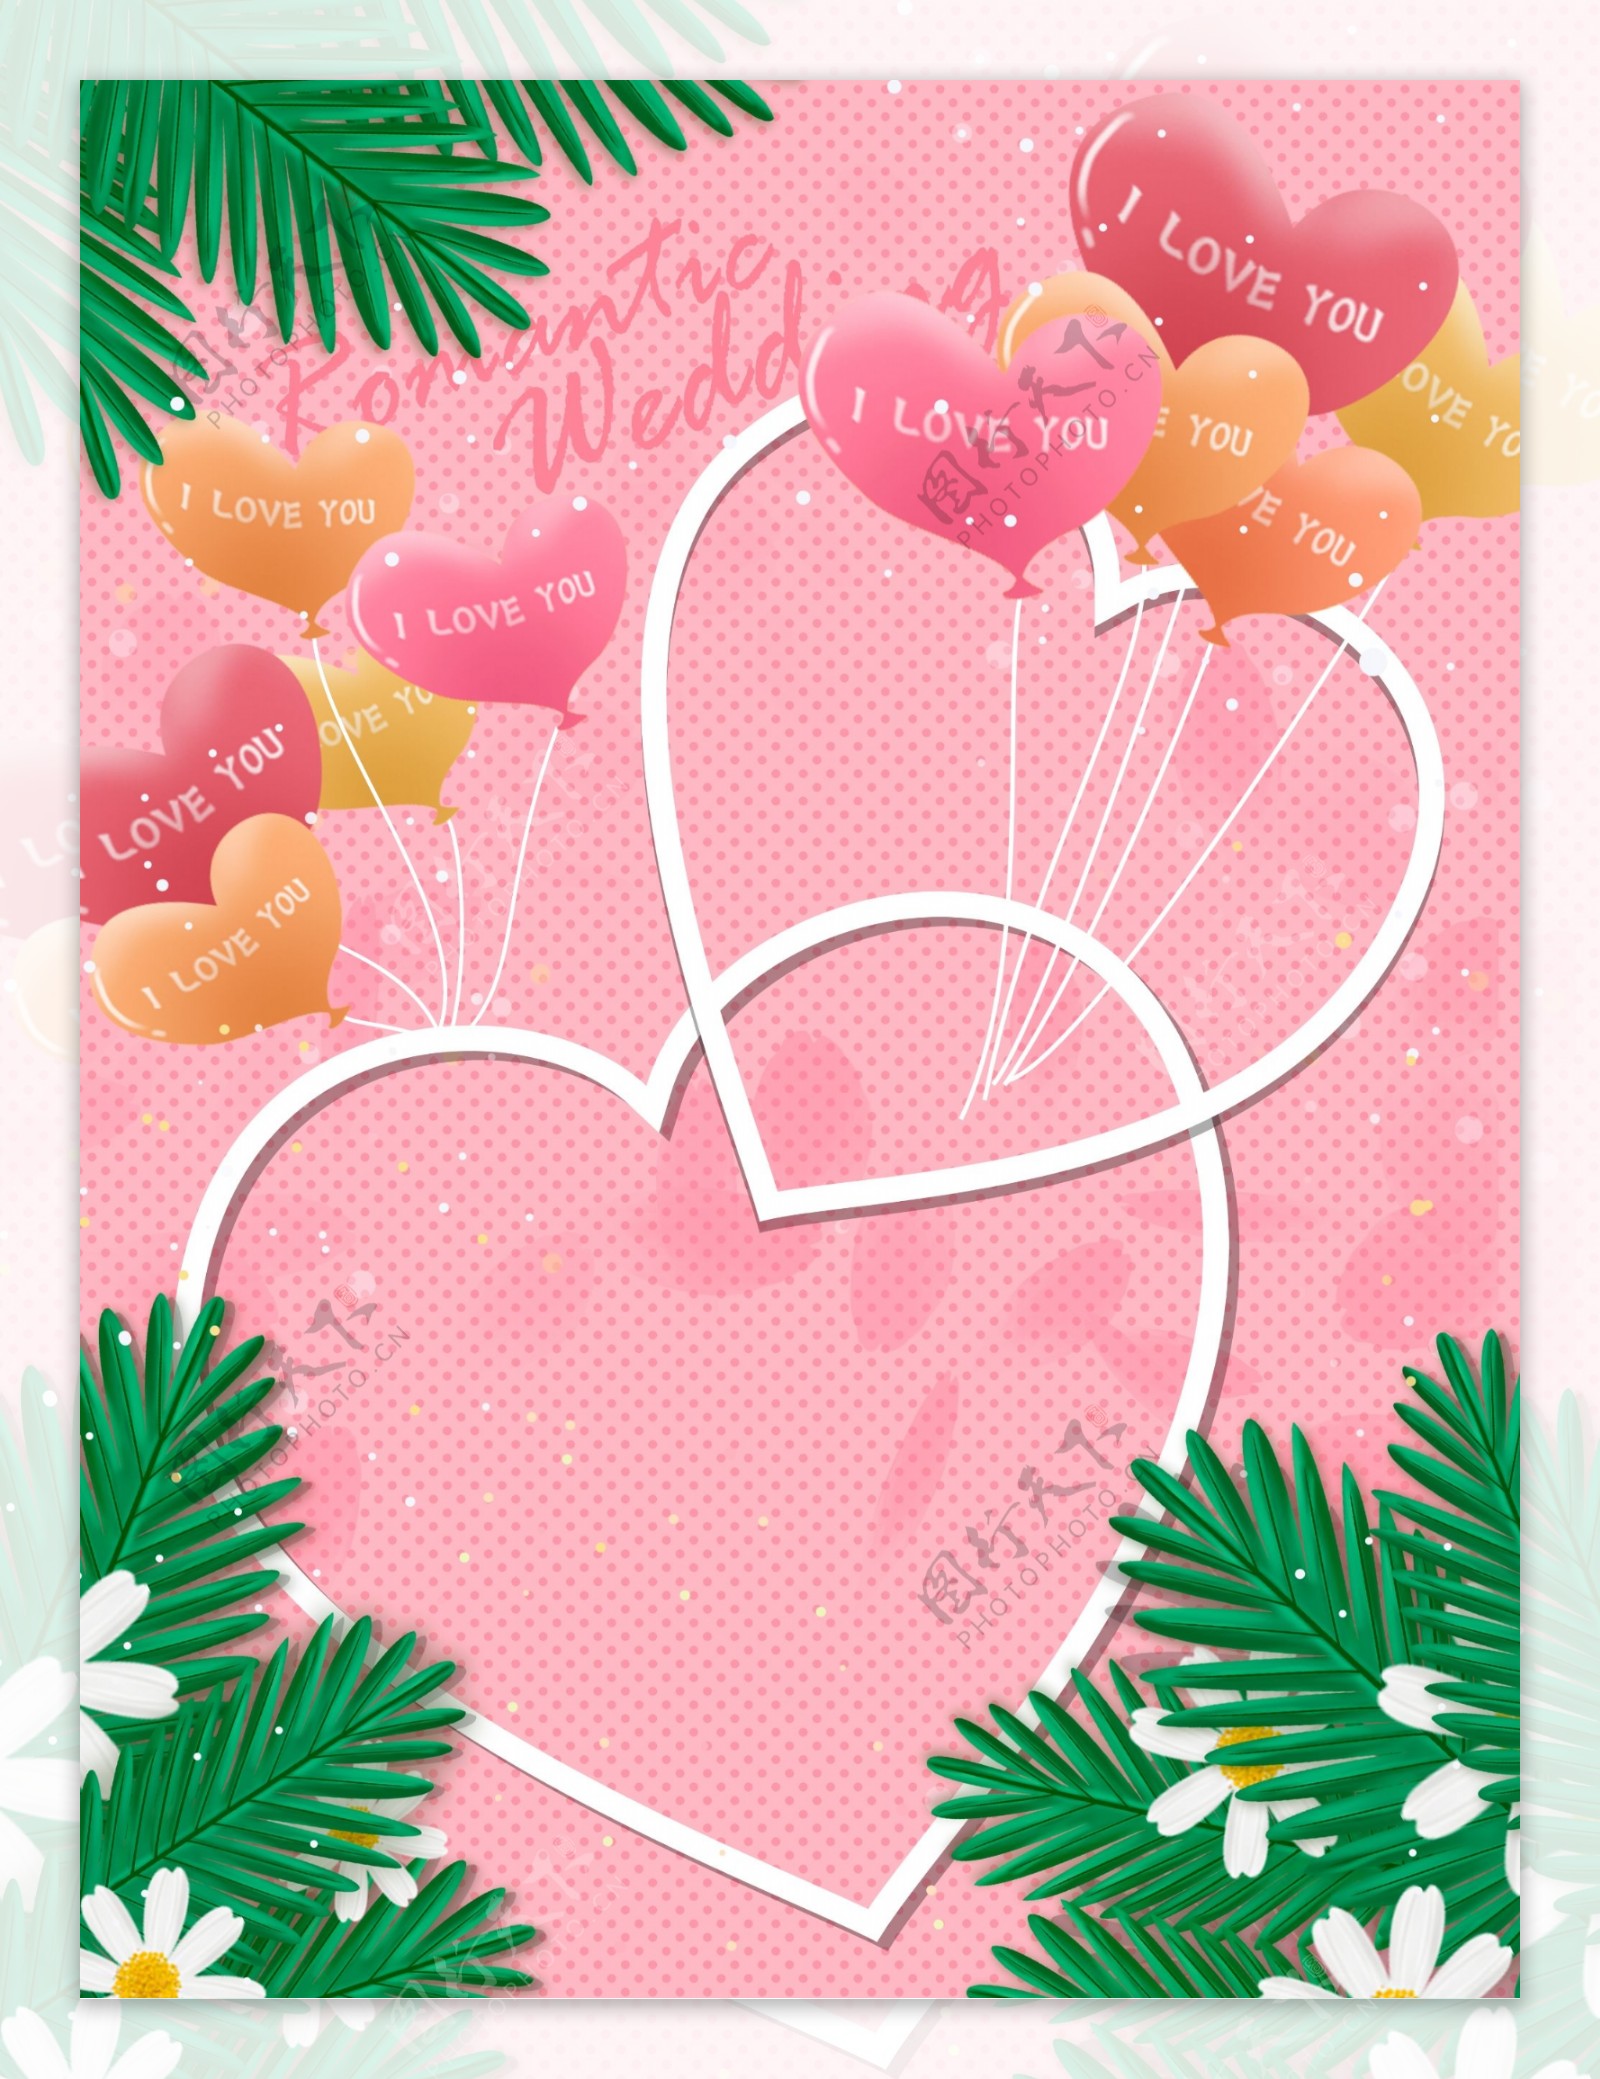 温馨粉色爱心气球婚礼背景设计